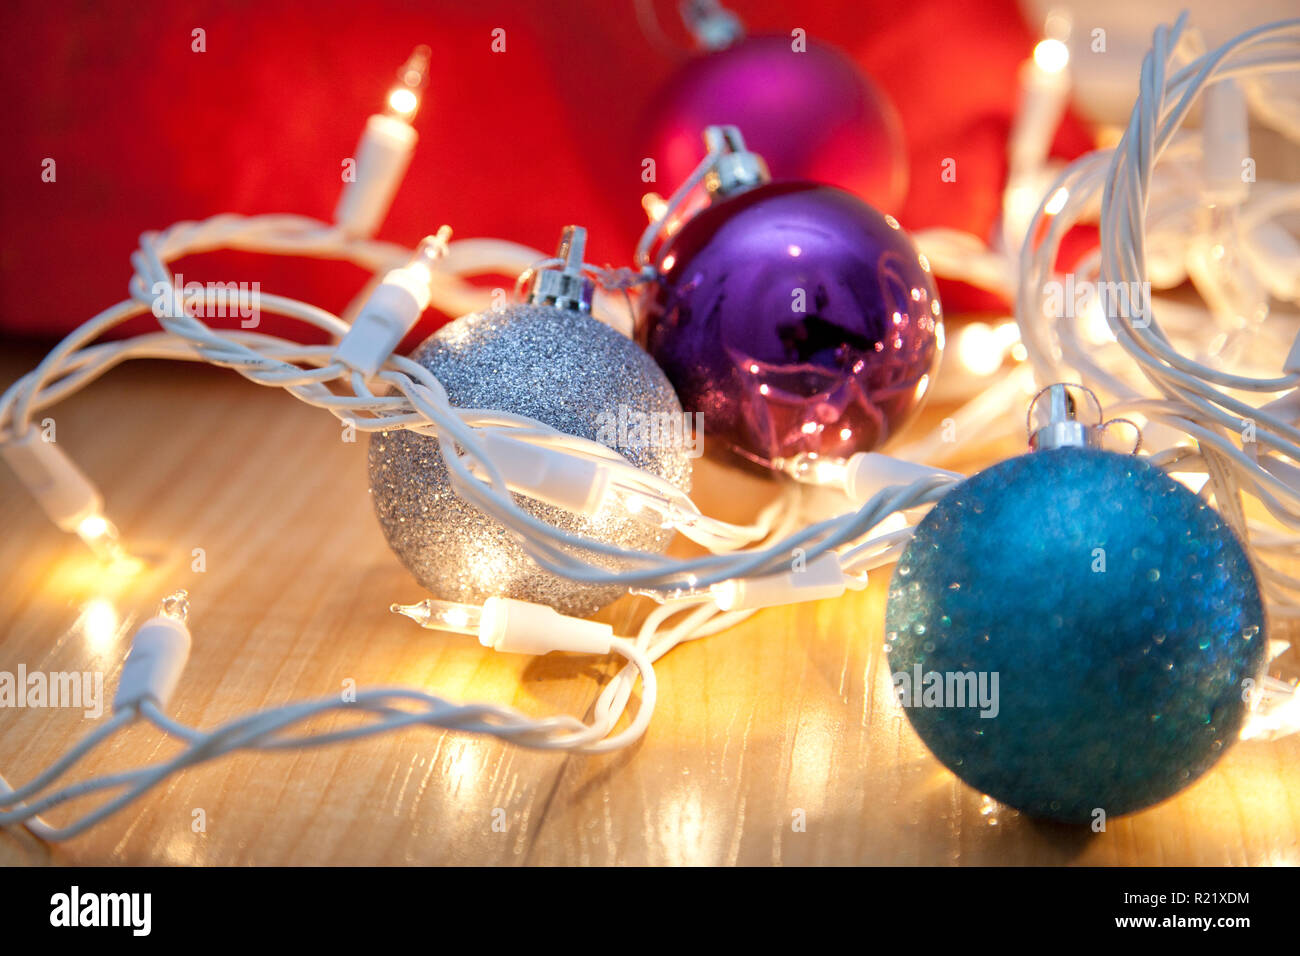 Bleu, argent et pourpre des ornements de Noël empêtré dans lumières blanches Banque D'Images